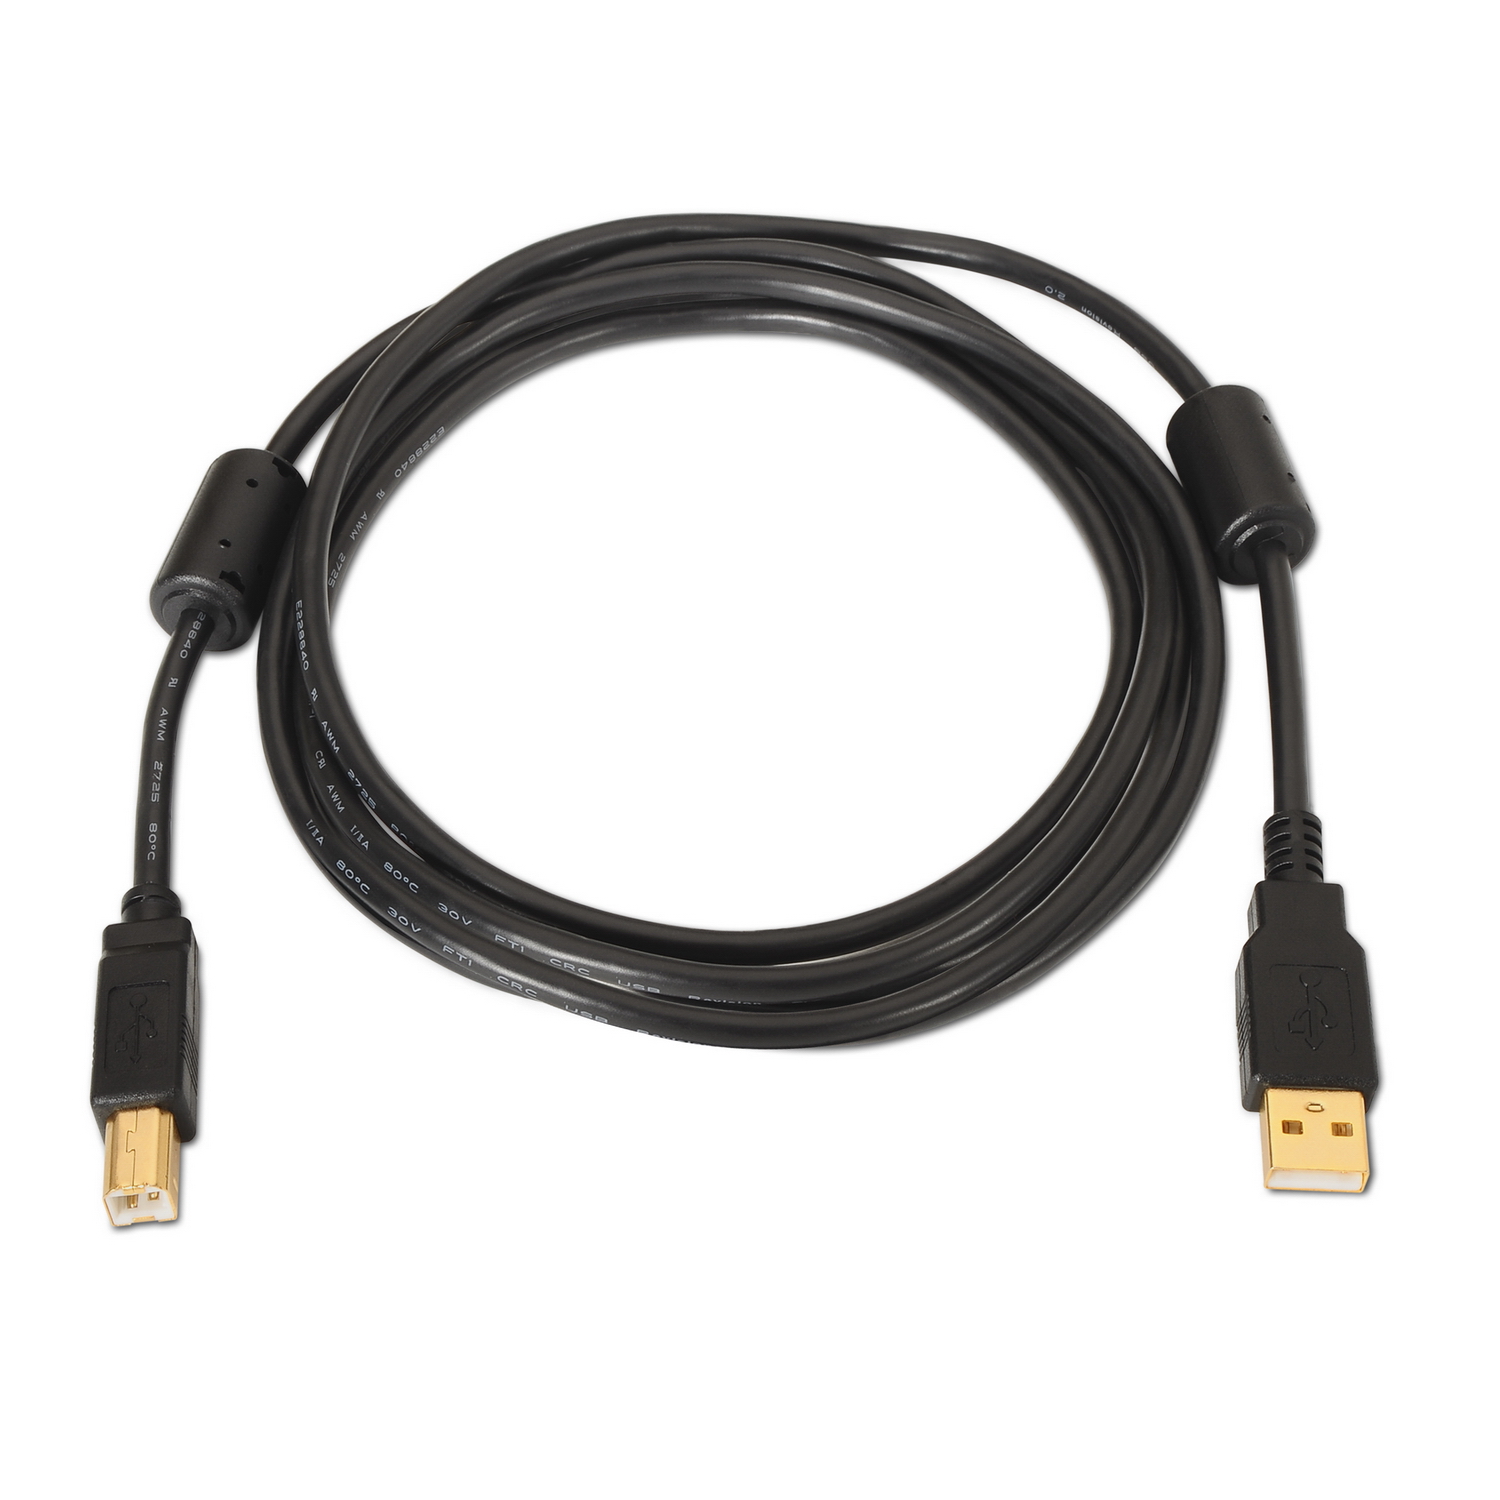 Aisens Câble d'imprimante USB 2.0 de très haute qualité avec ferrite - Type A mâle vers type B mâle - 3,0 m - Couleur noire